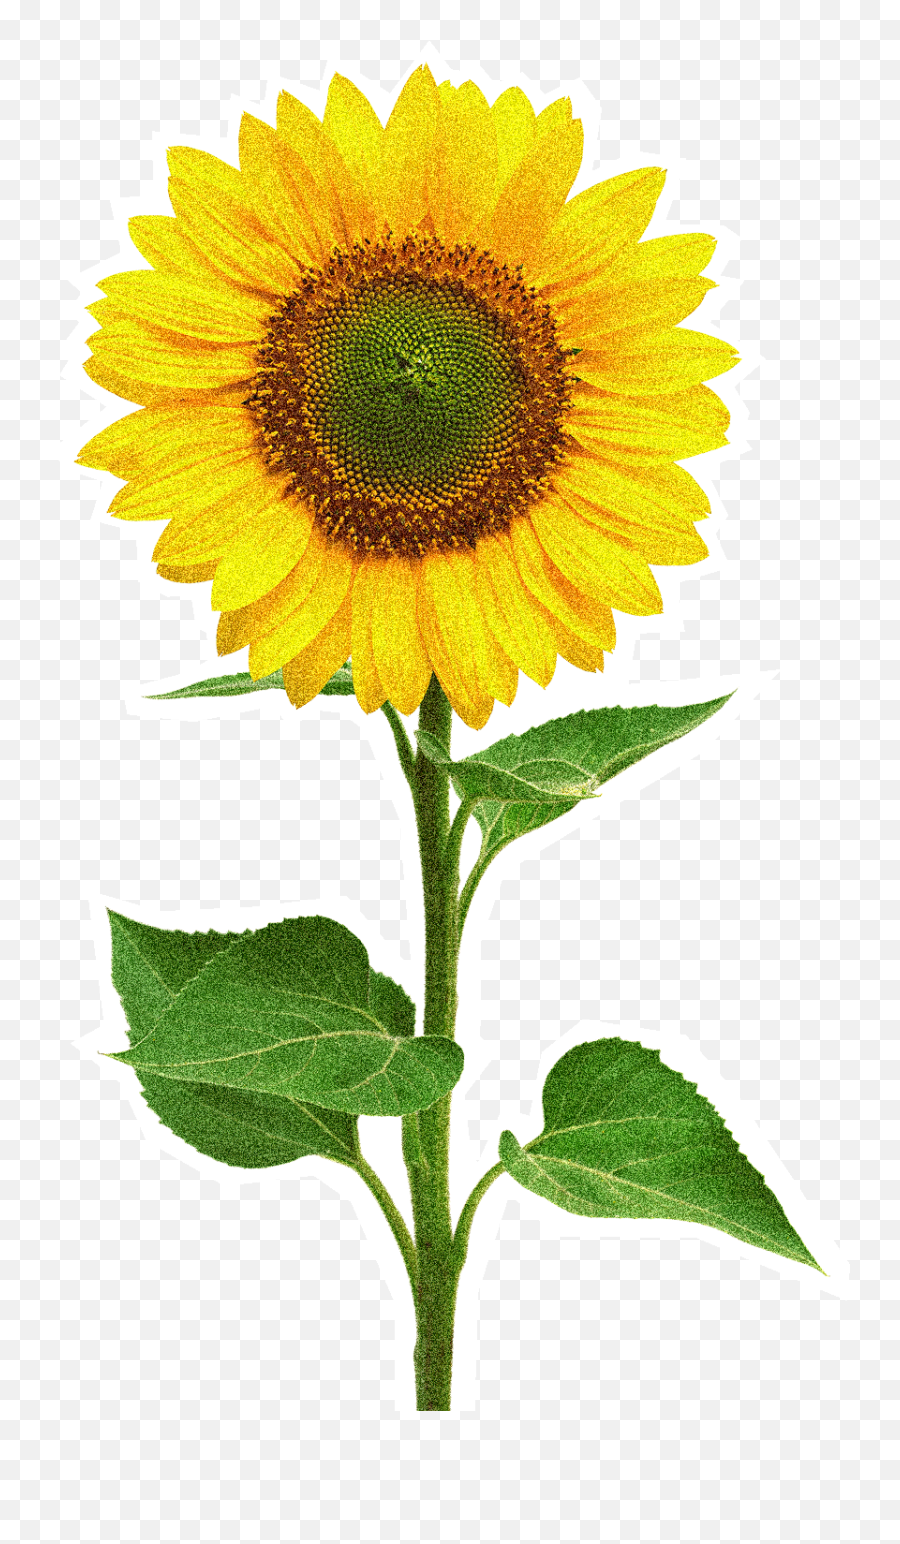 Sunflower - Flowerfreepngtransparentimagesfreedownload Sun Flower Png,Transparent Sunflower